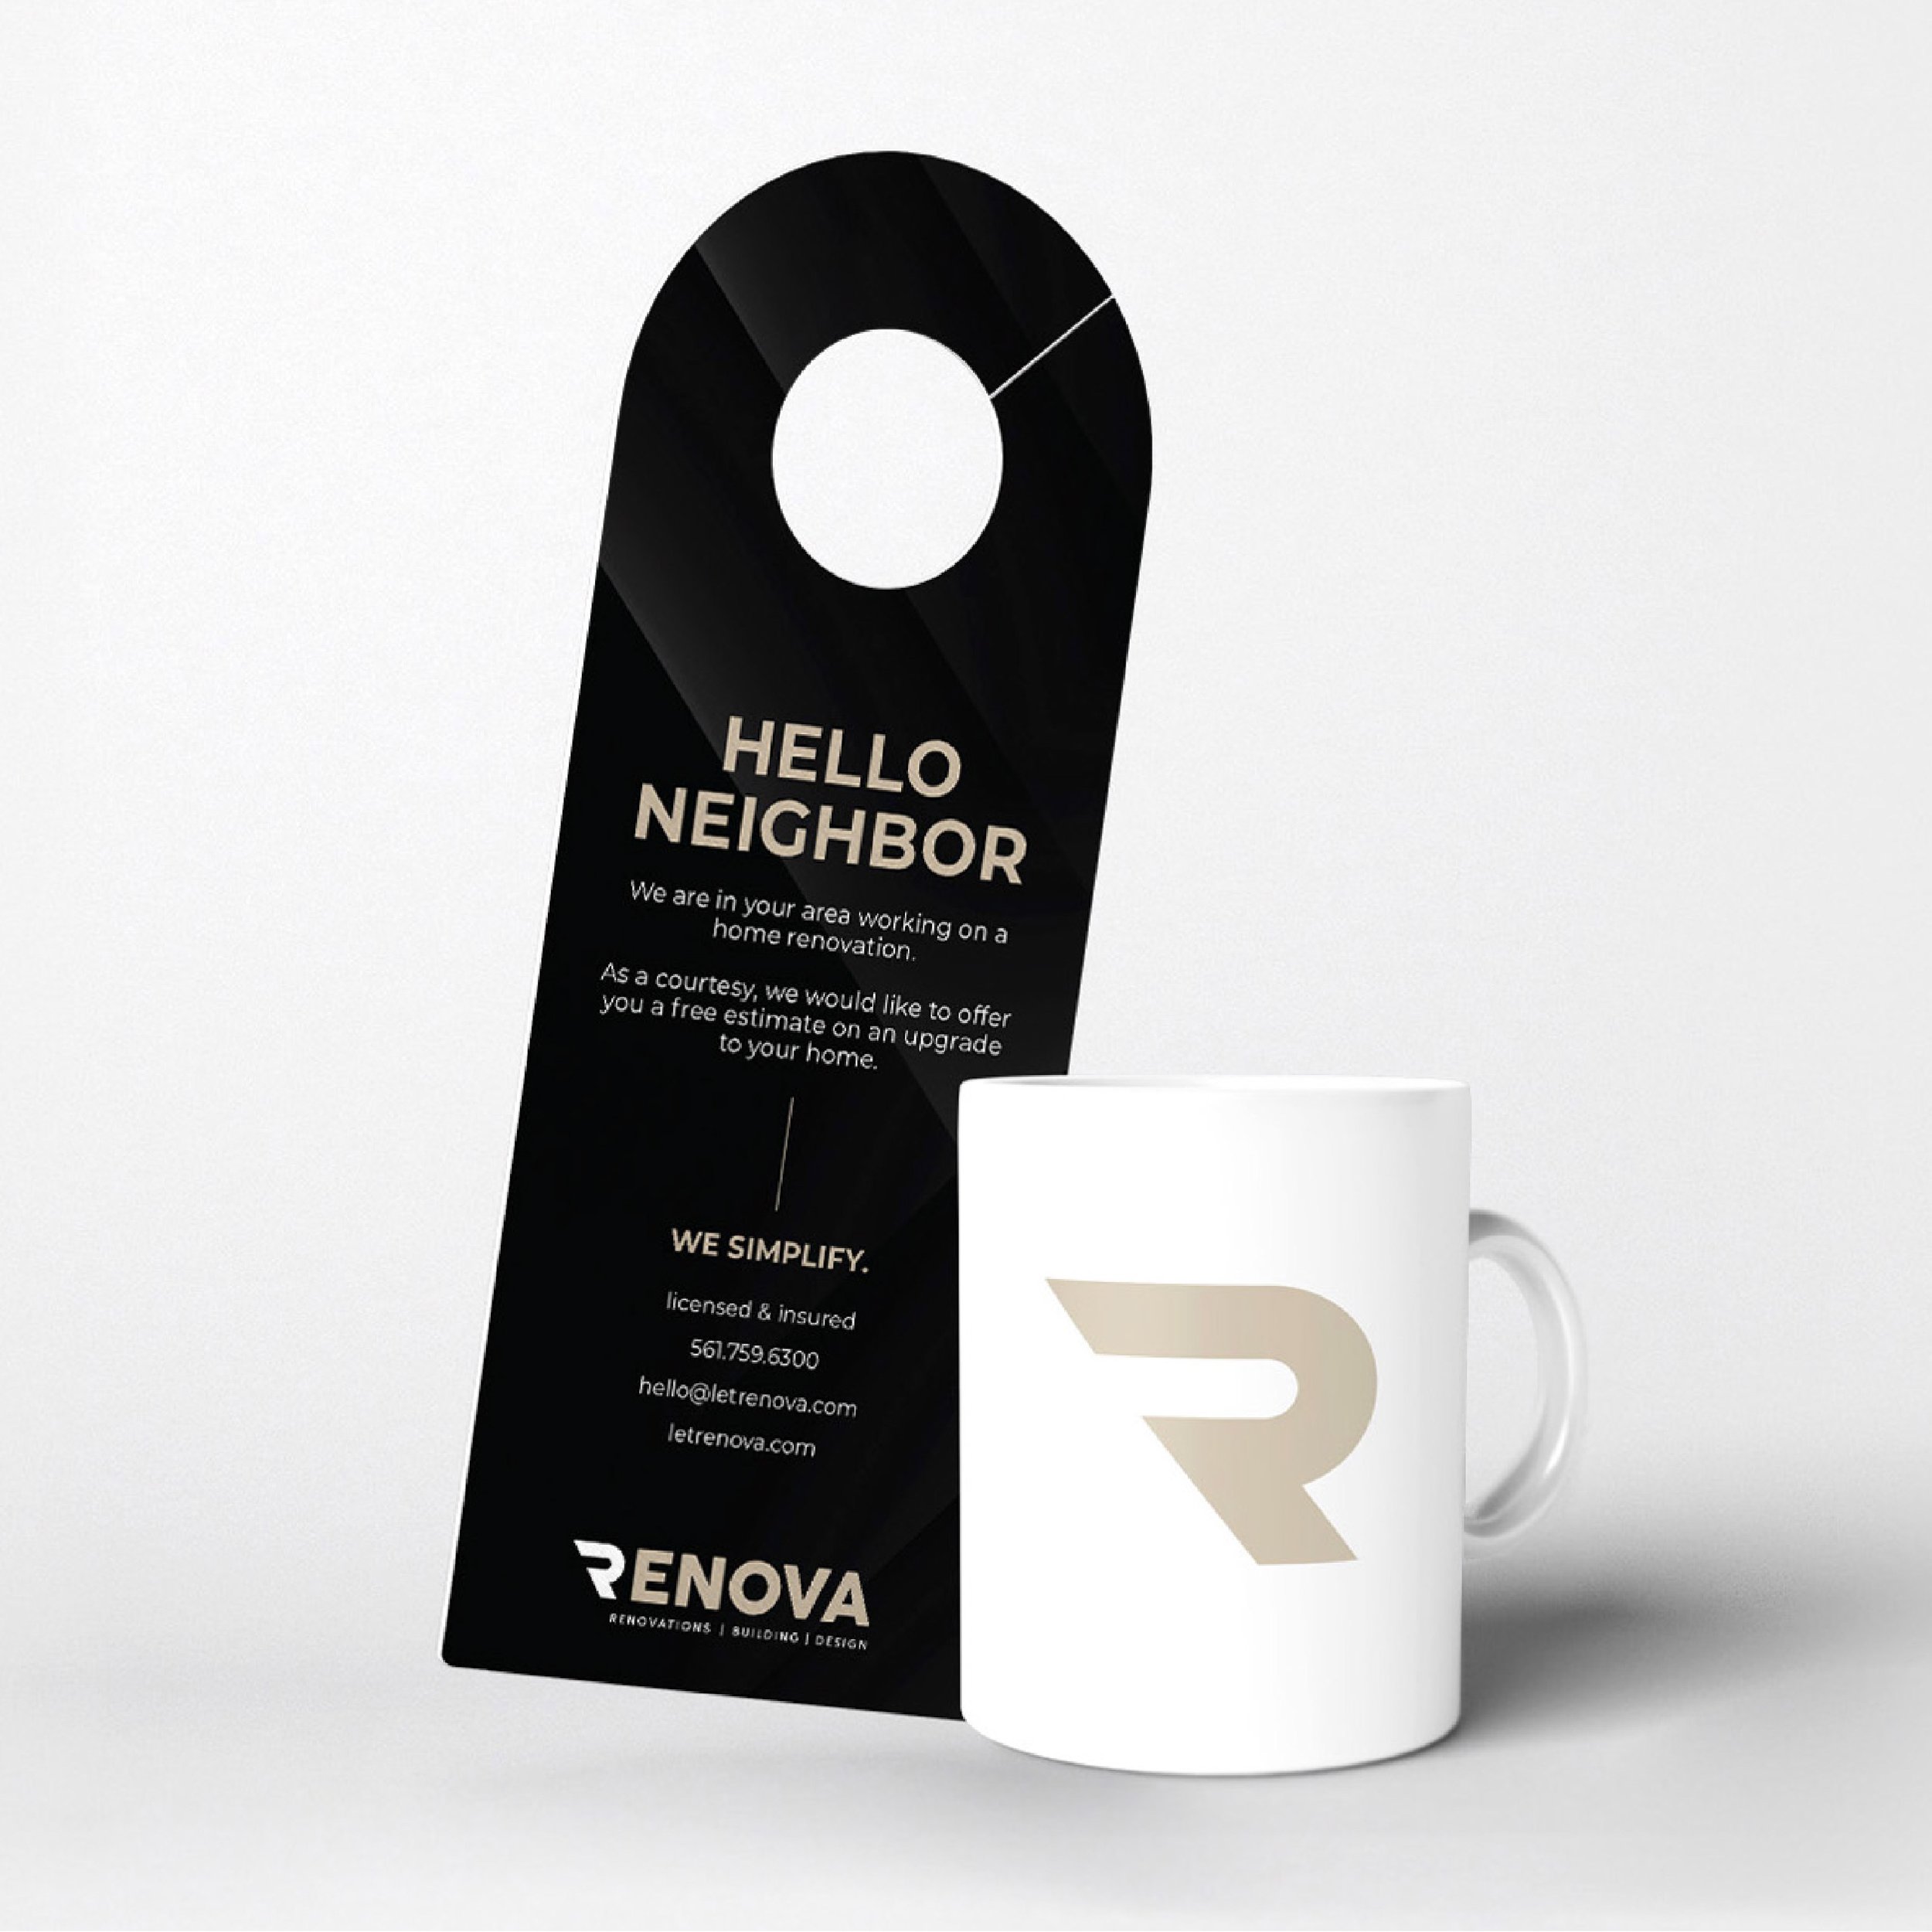 renova-branding-door-hanger-and-mug-delray-beach-04.jpg